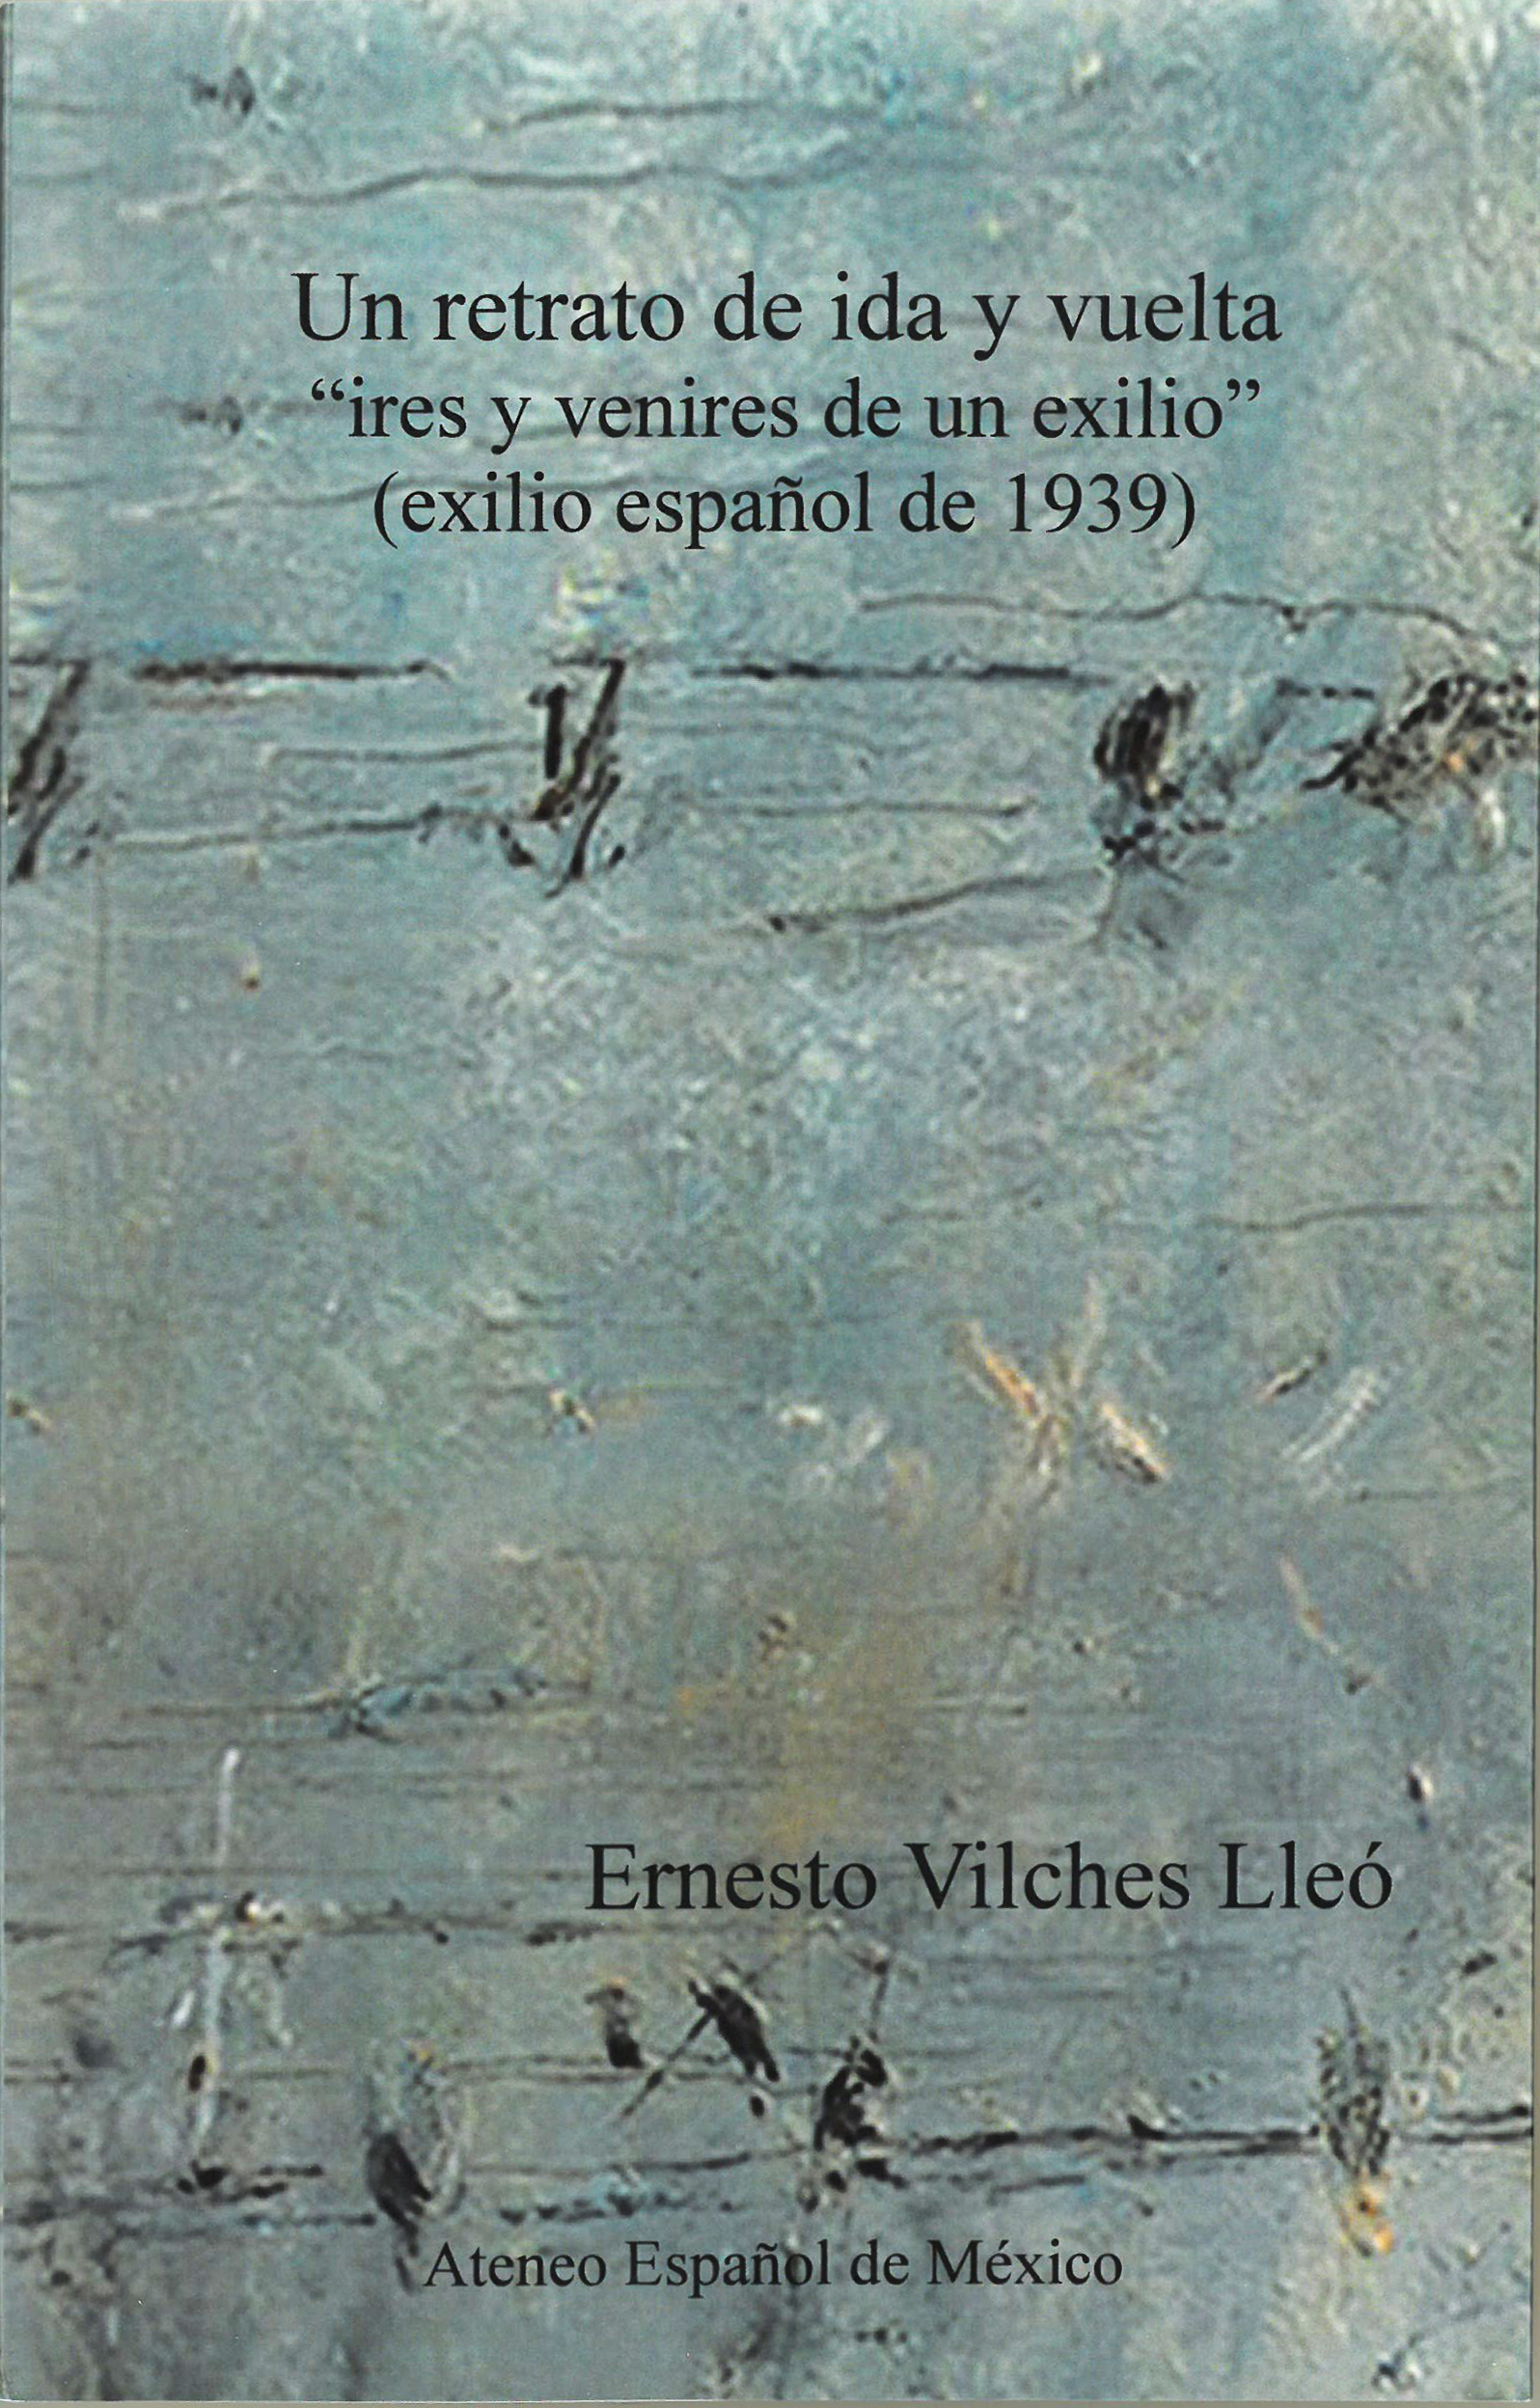 Un retrato de ida y vuelta "ires y venires de un exilio" (exilio español de 1939) main image